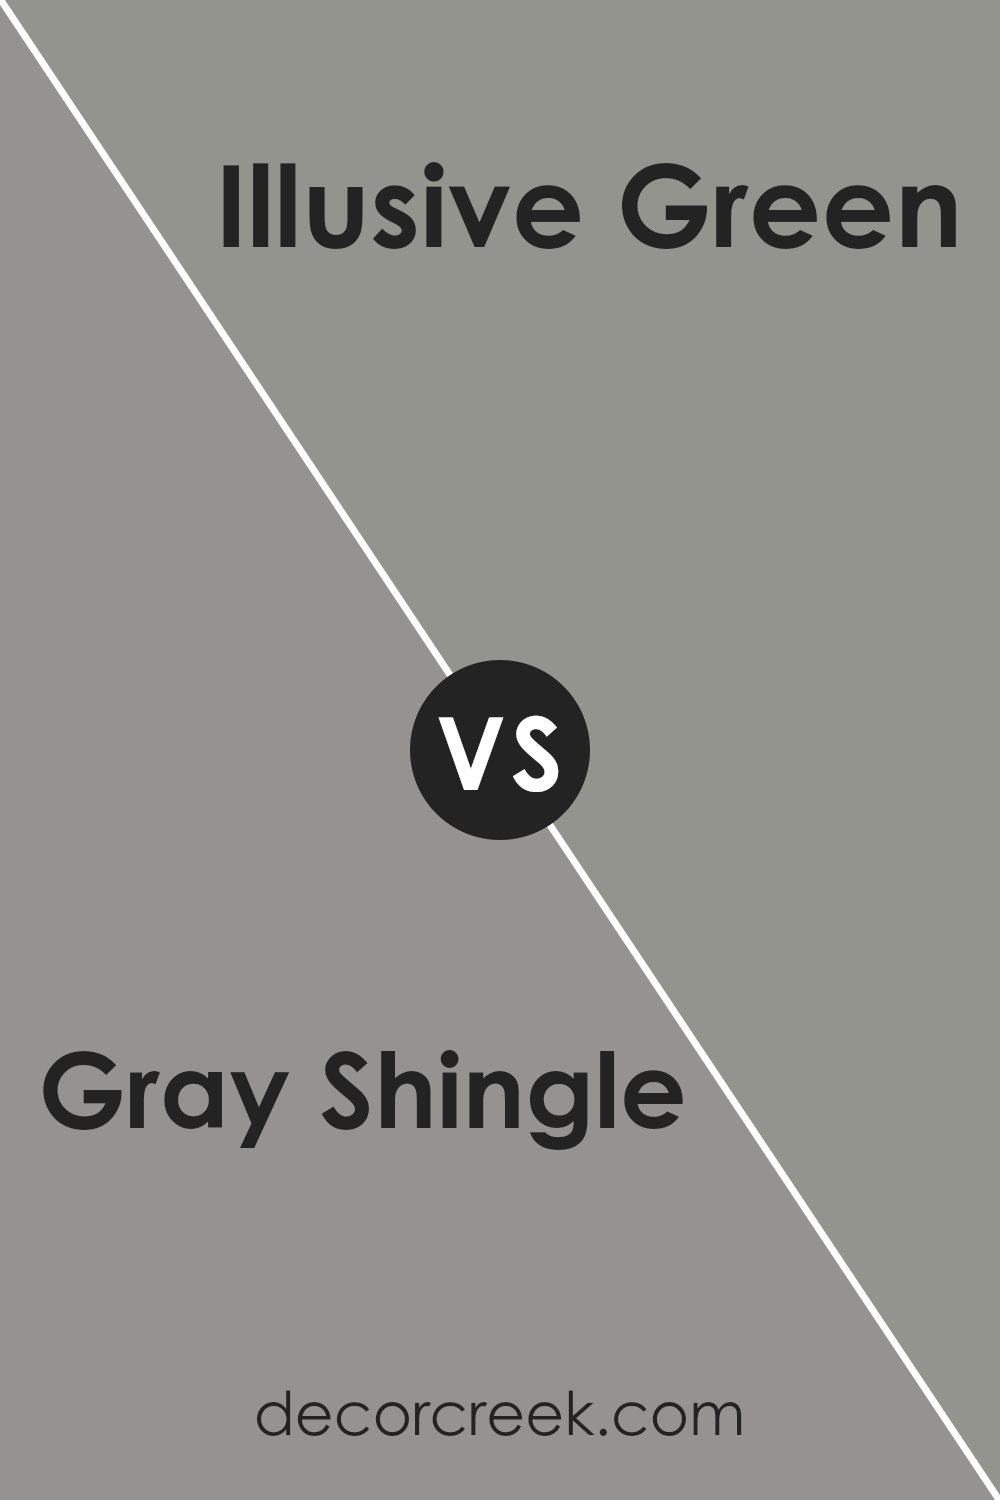 gray_shingle_sw_7670_vs_illusive_green_sw_9164